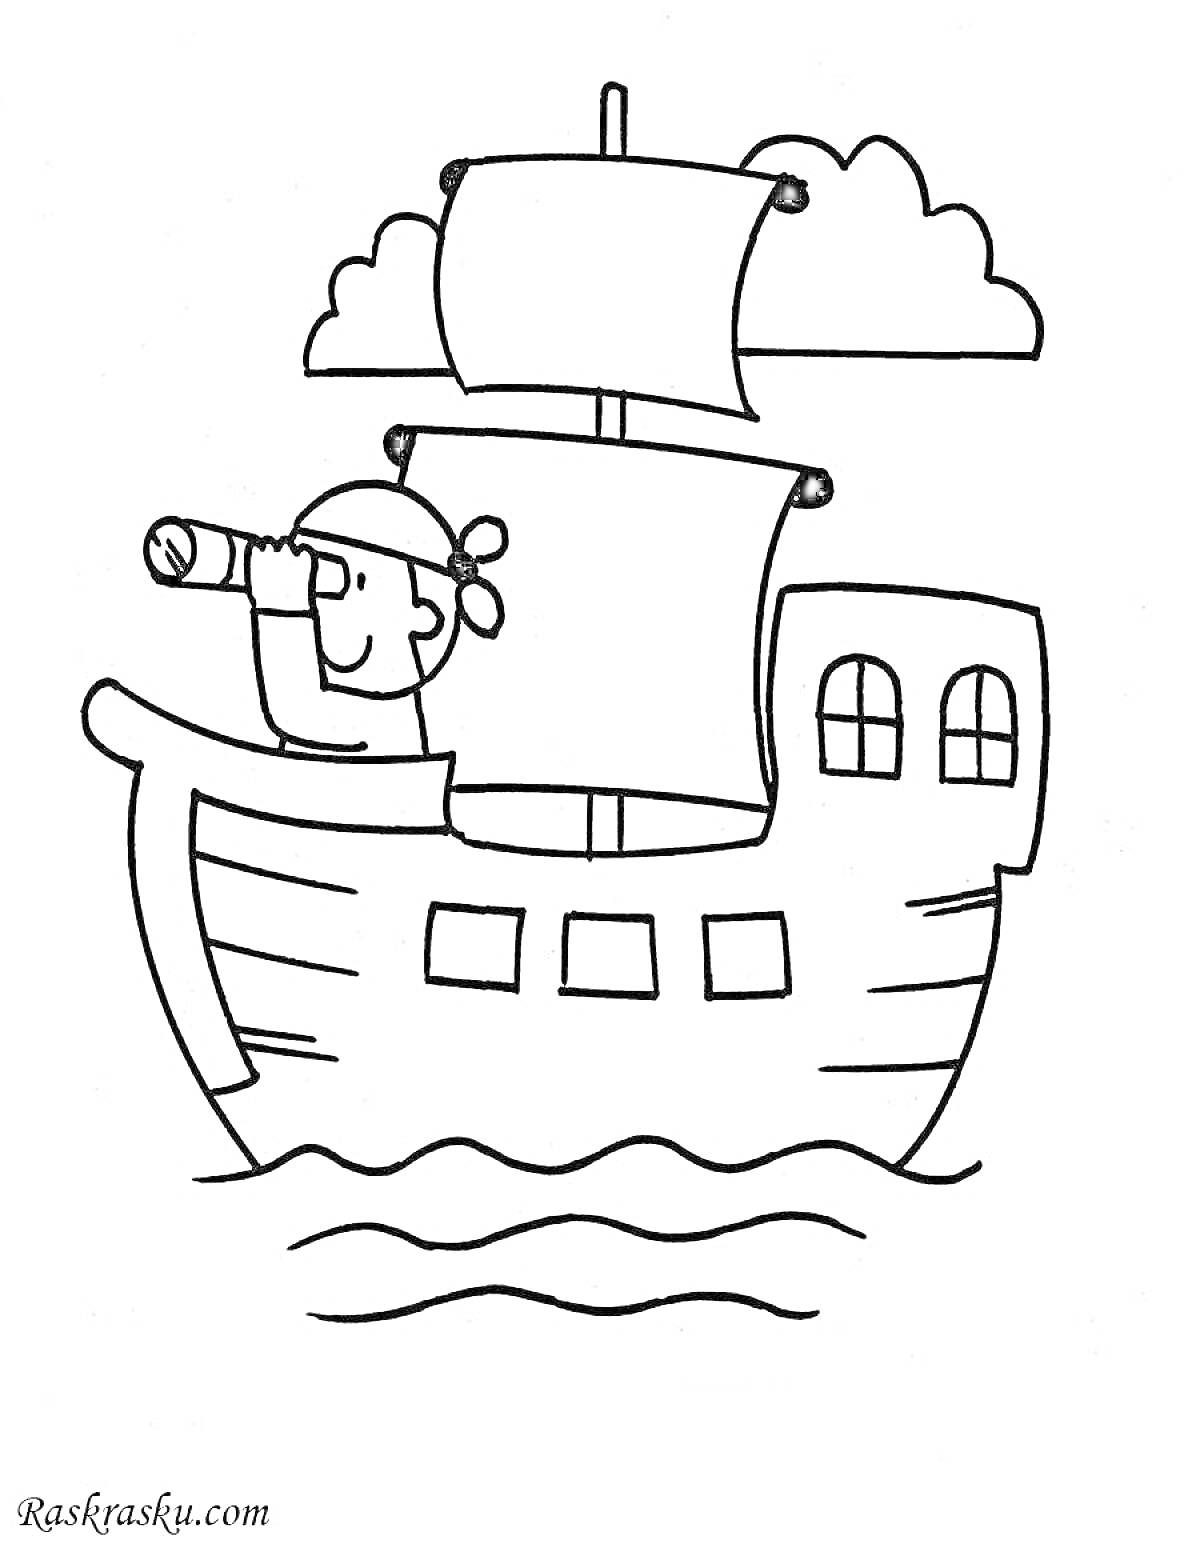 Раскраска Корабль с матросом, смотрящим в подзорную трубу, и парусами на волнах, на фоне облаков